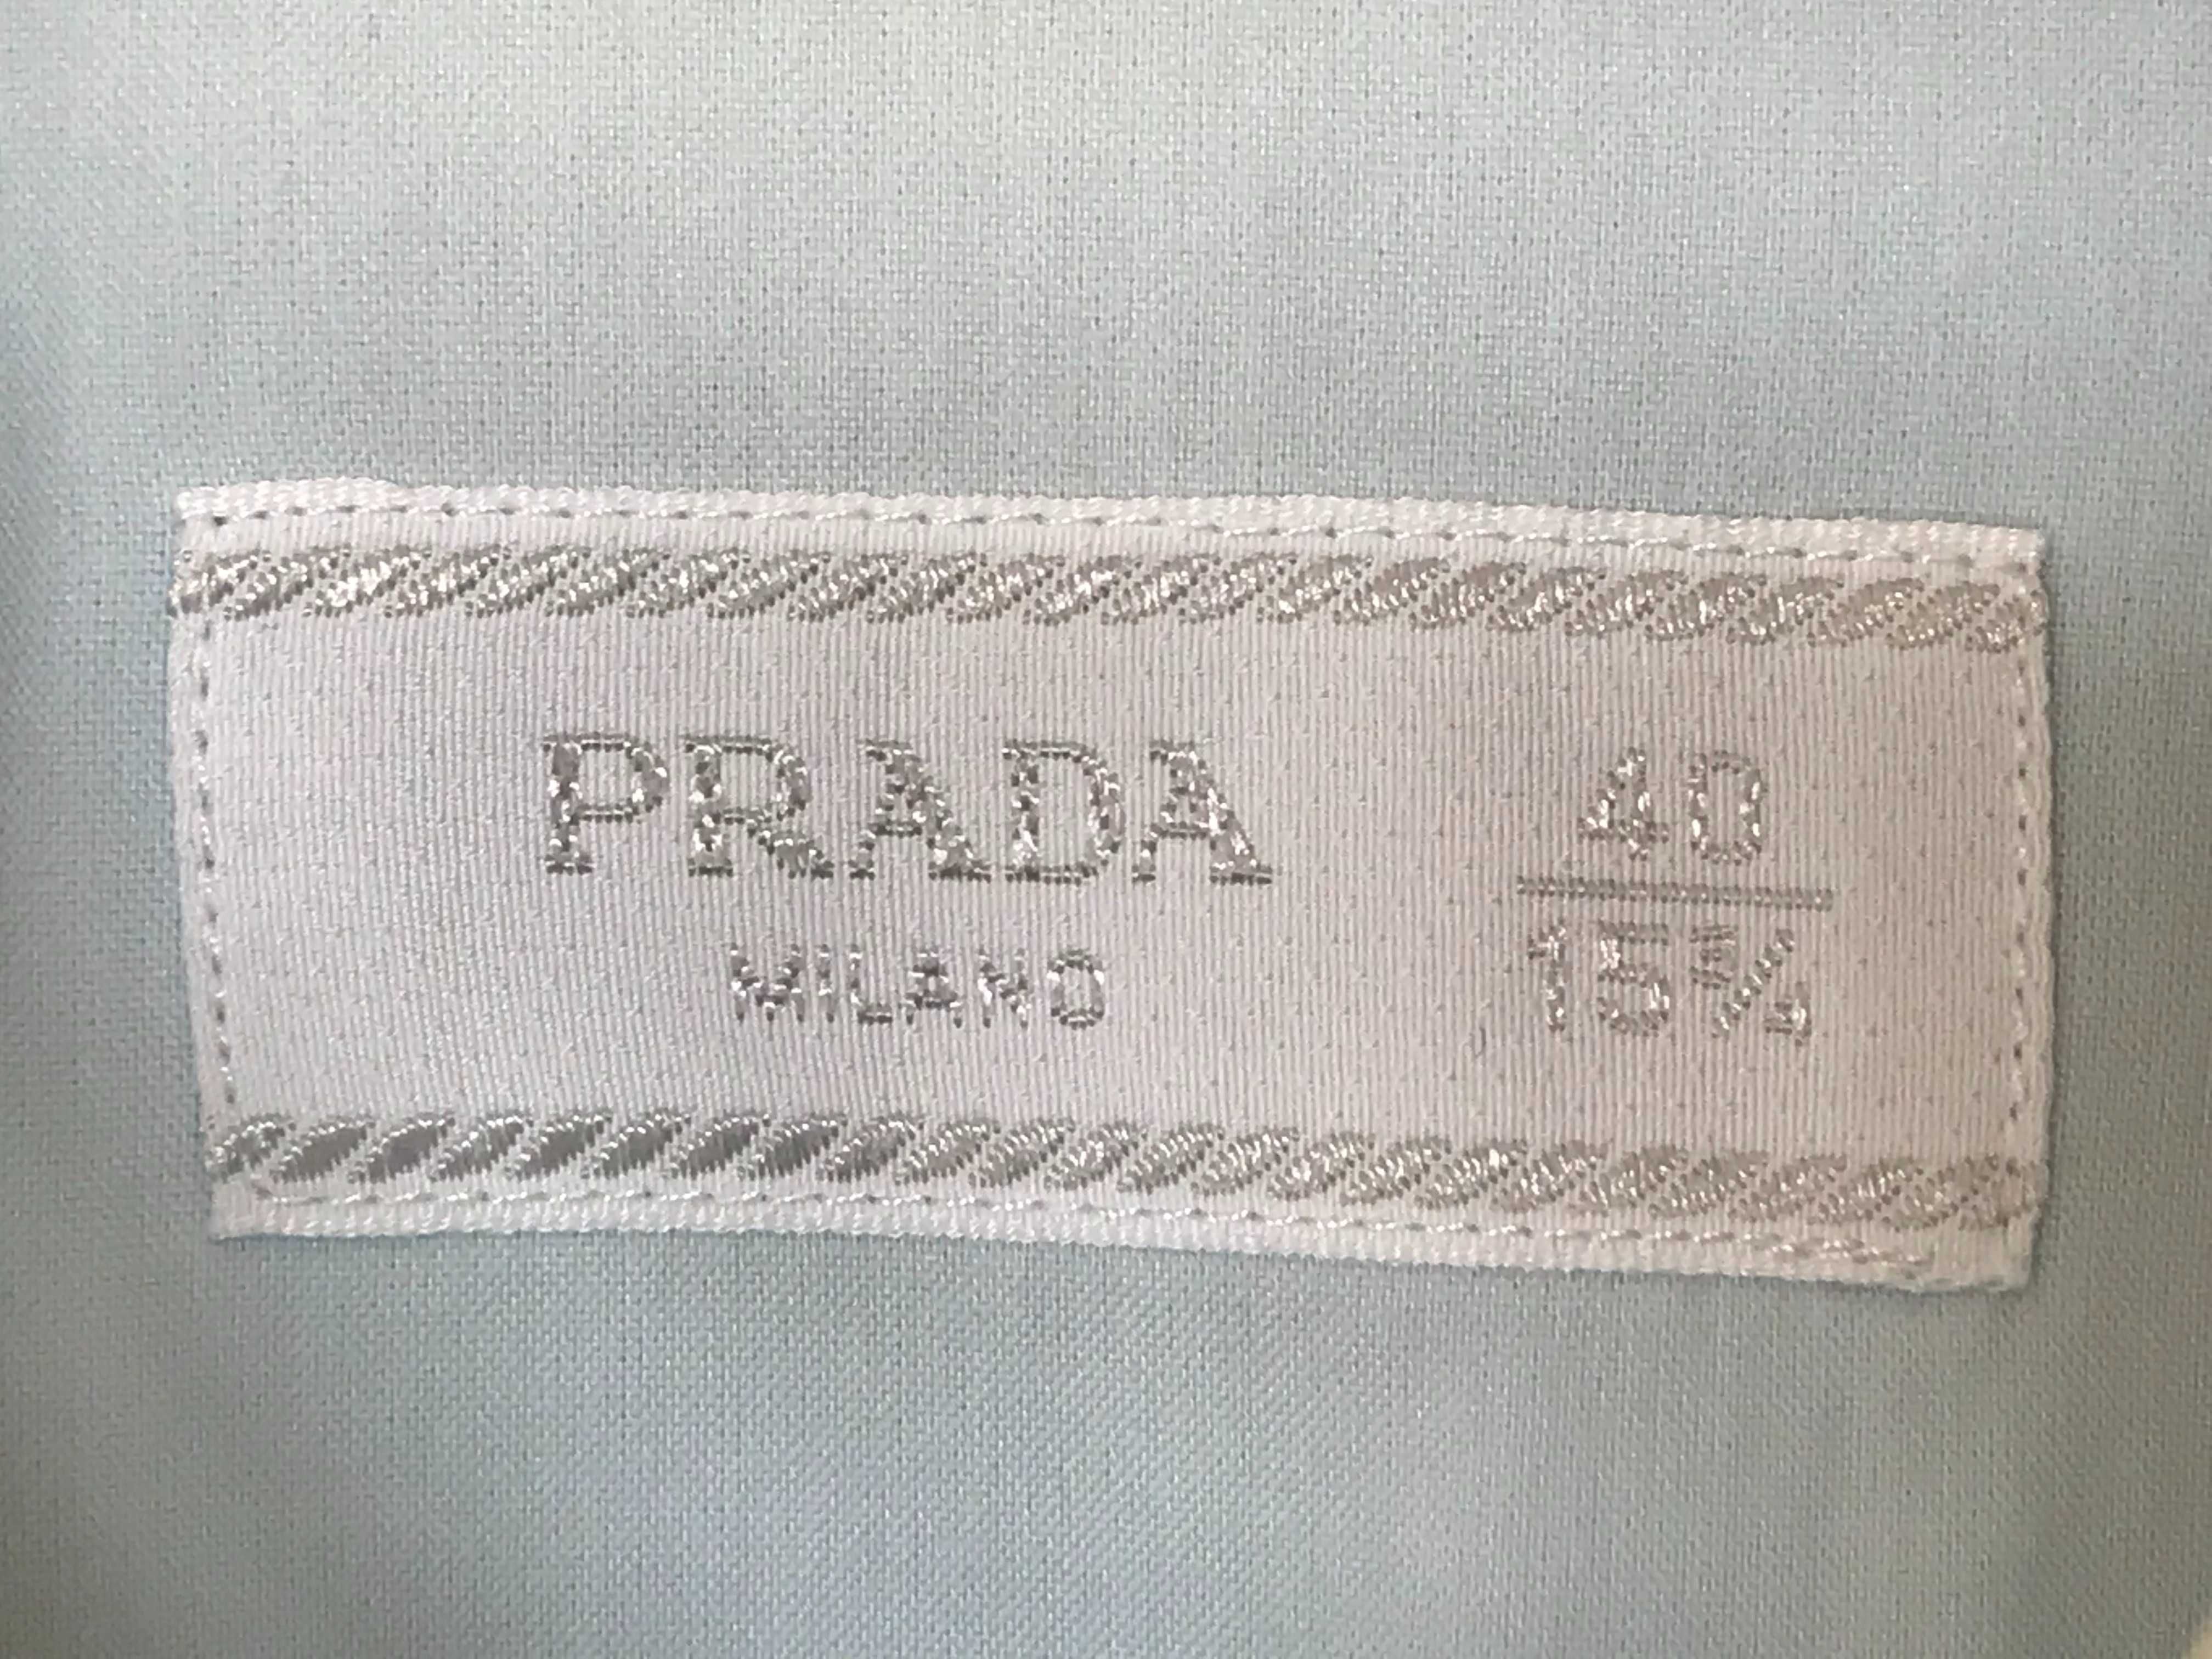 Męska błękitna koszula Prada Milano UCM608-F62-F0012 r. 15 3/4 (40)